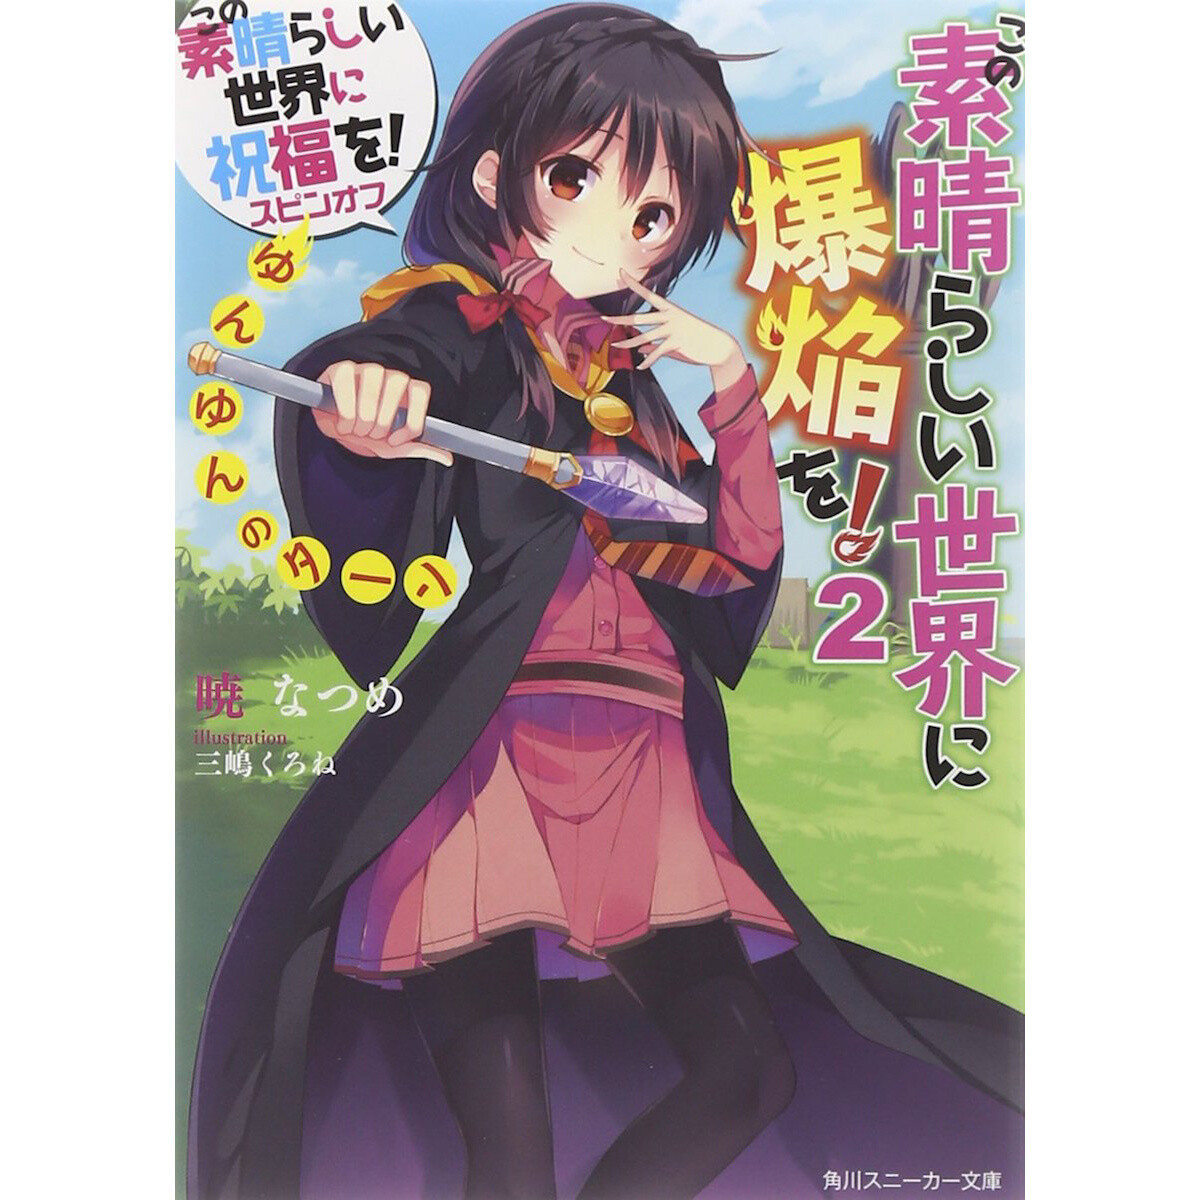 Kono Subarashii Sekai ni Shukufuku o! Light Novel Bundles Original Anime  Blu-ray - News - Anime News Network